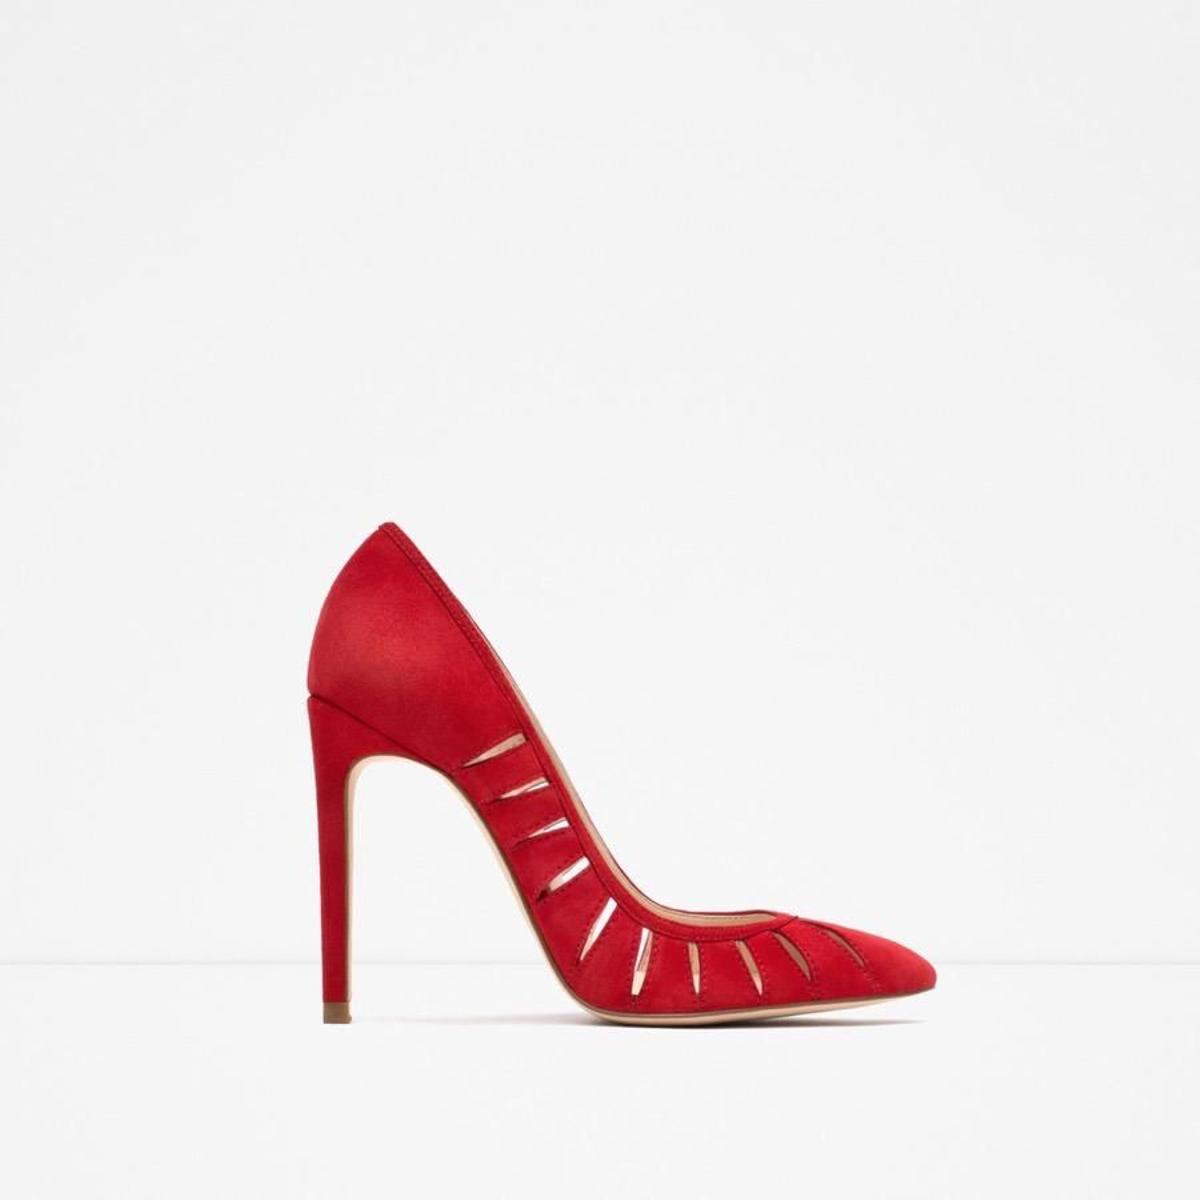 30 zapatos para asistir a una boda, rojo clásico.